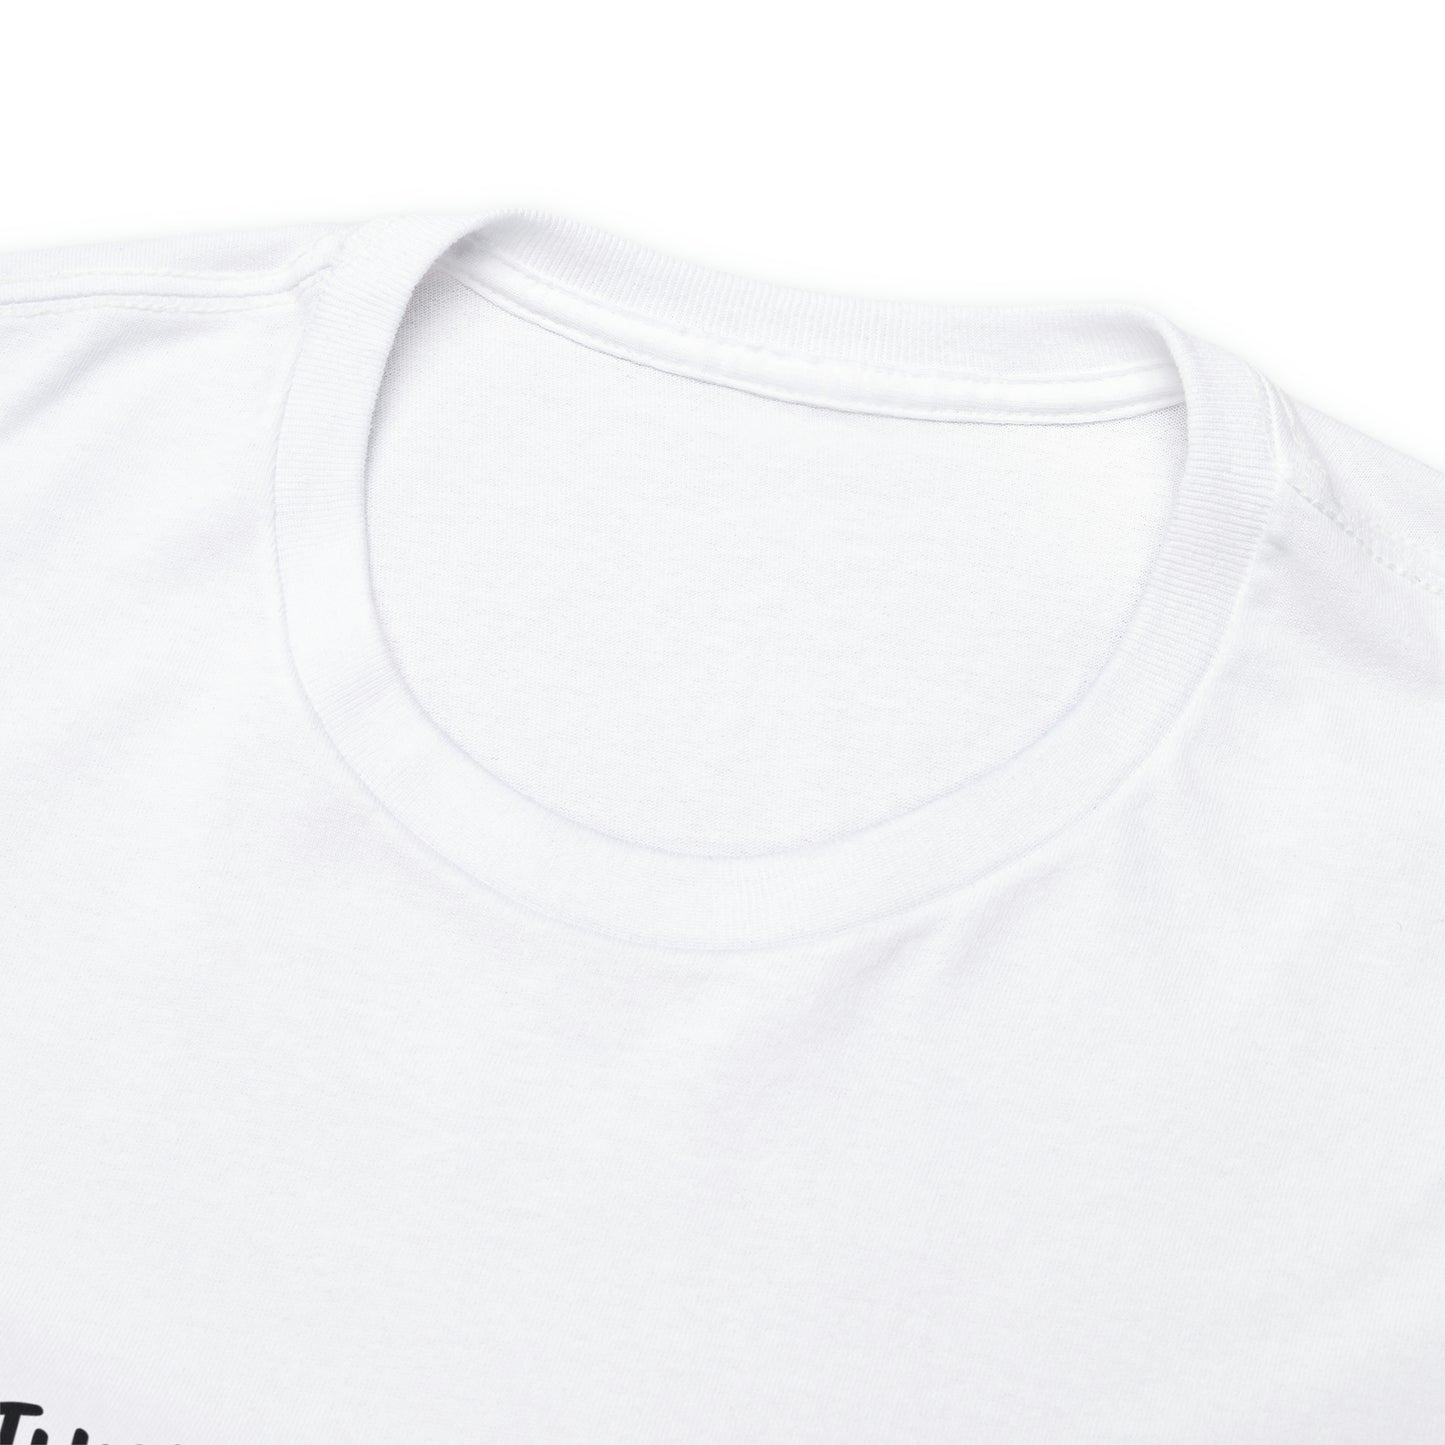 Unisex Cotton Tee, Bible Verse Shirt, Regular Fit, Short Sleeve Men's T-Shirt